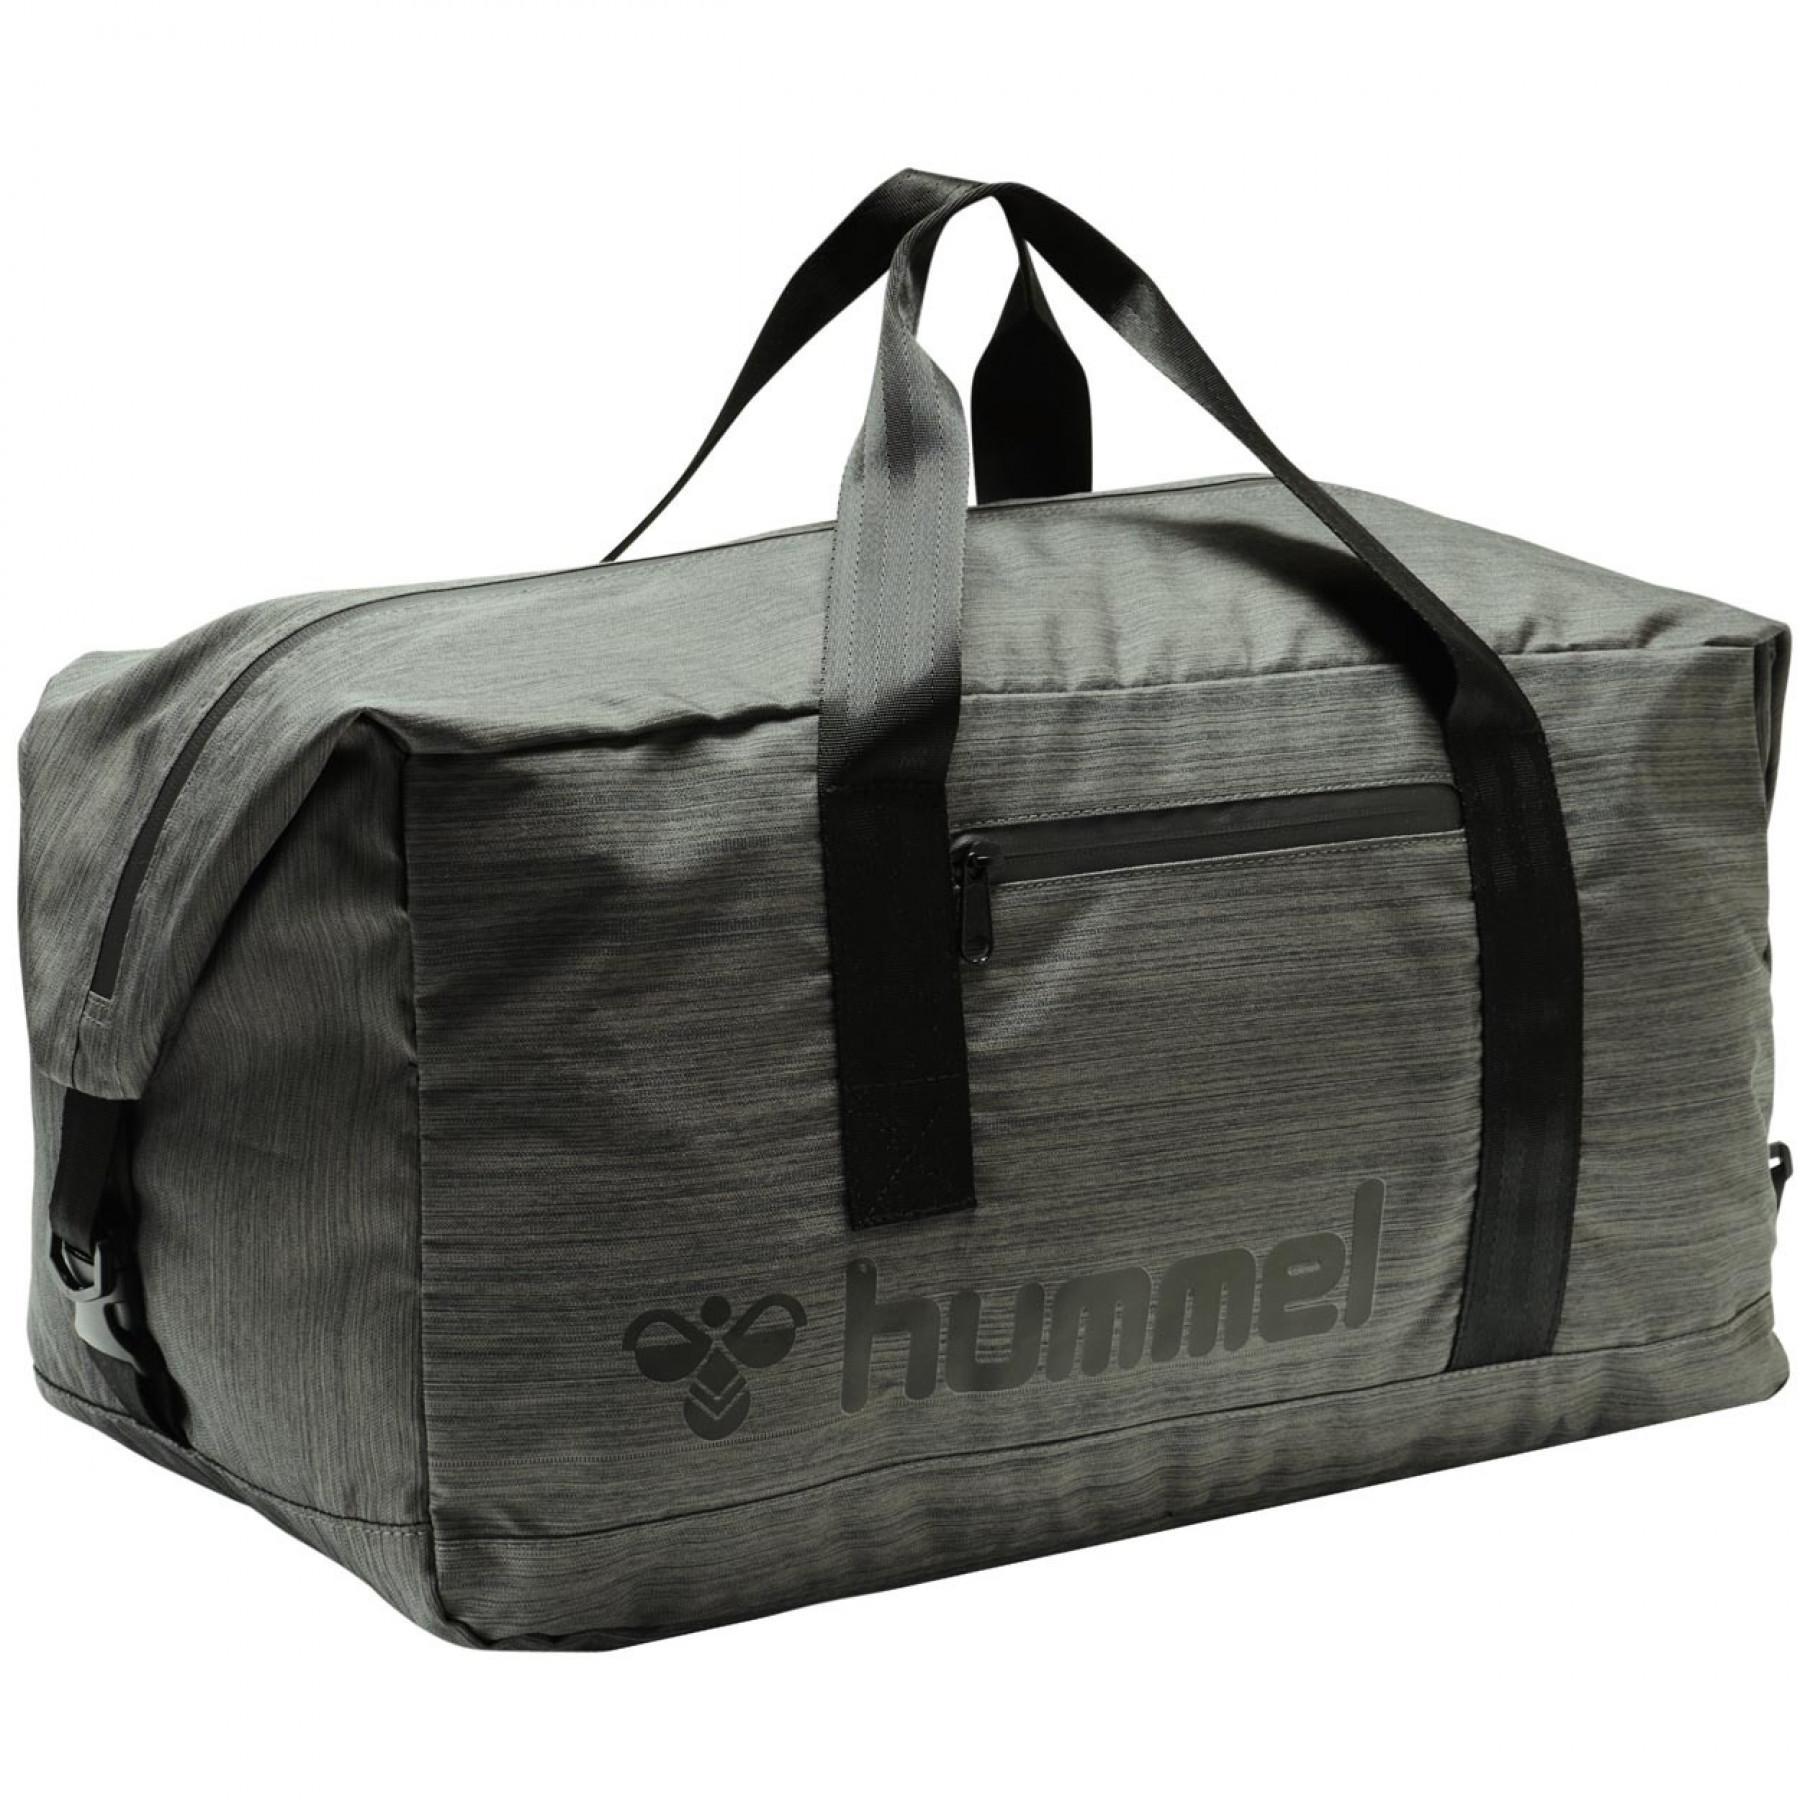 Travel bag Hummel